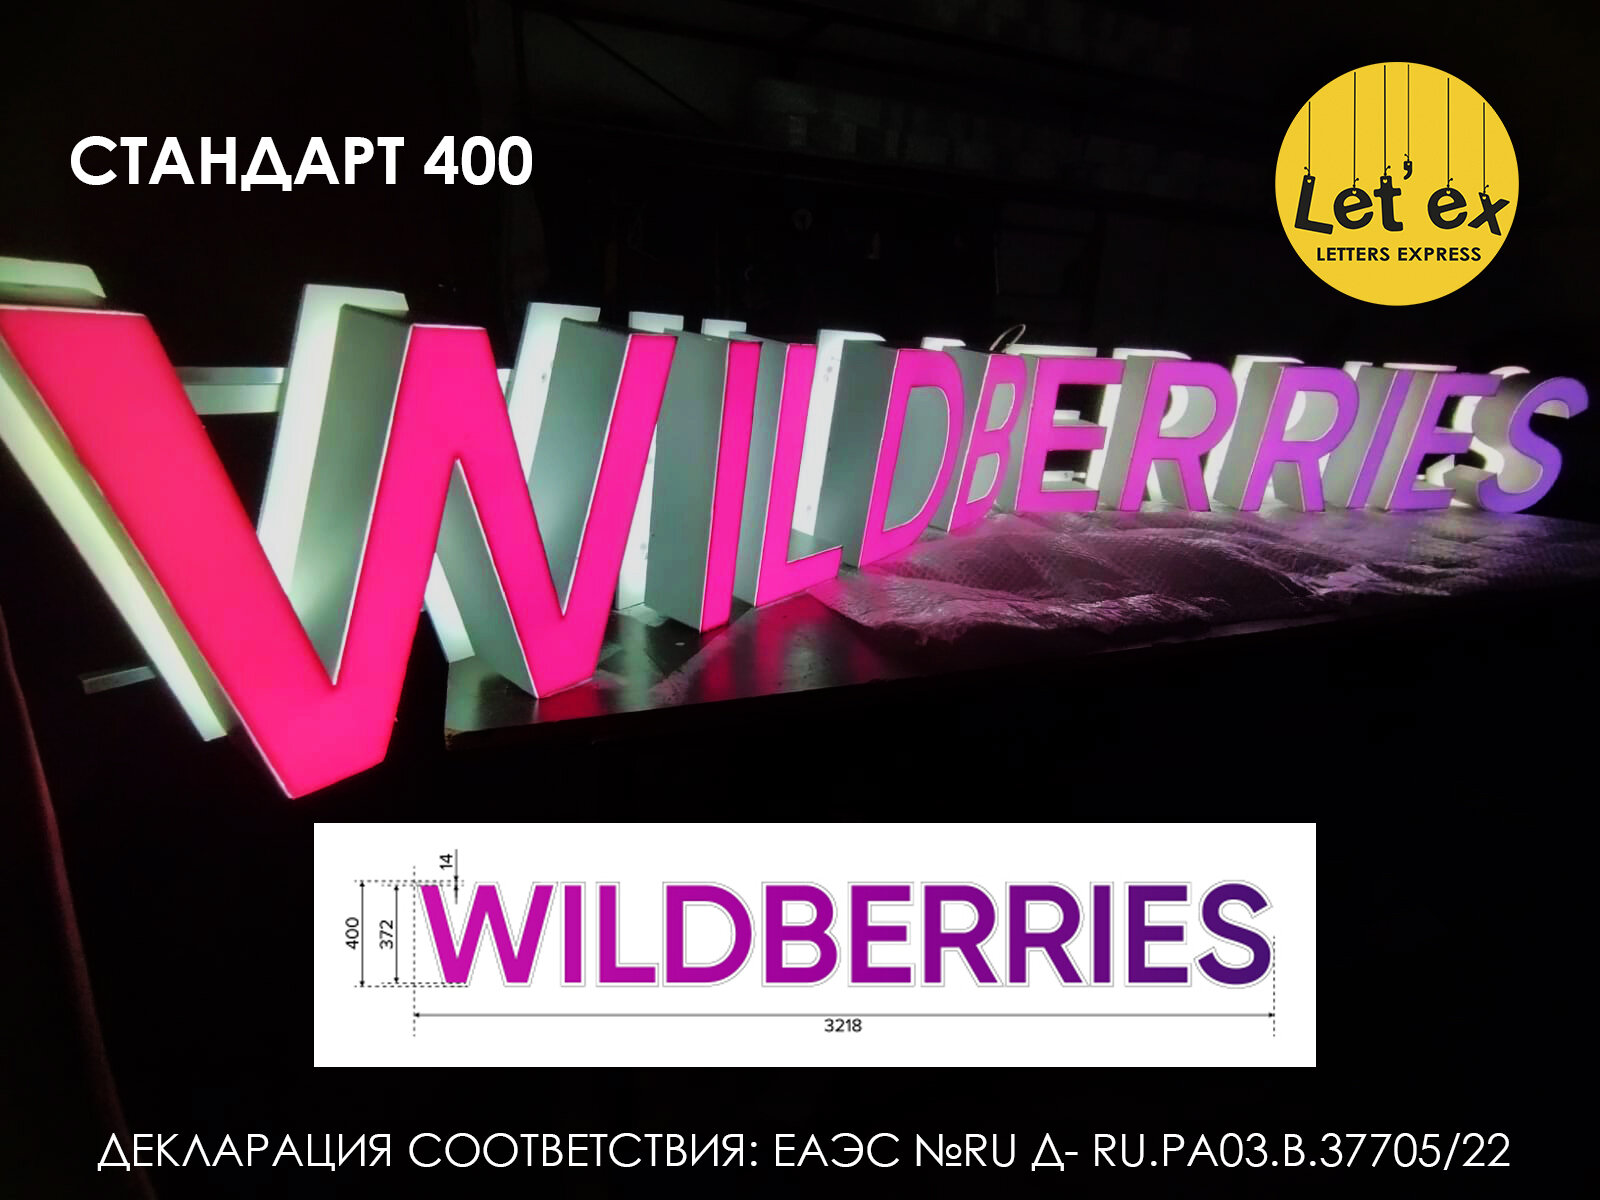 Вывеска WILDBERRIES Вайлдбериз 40cм световая, фиолетовый градиент